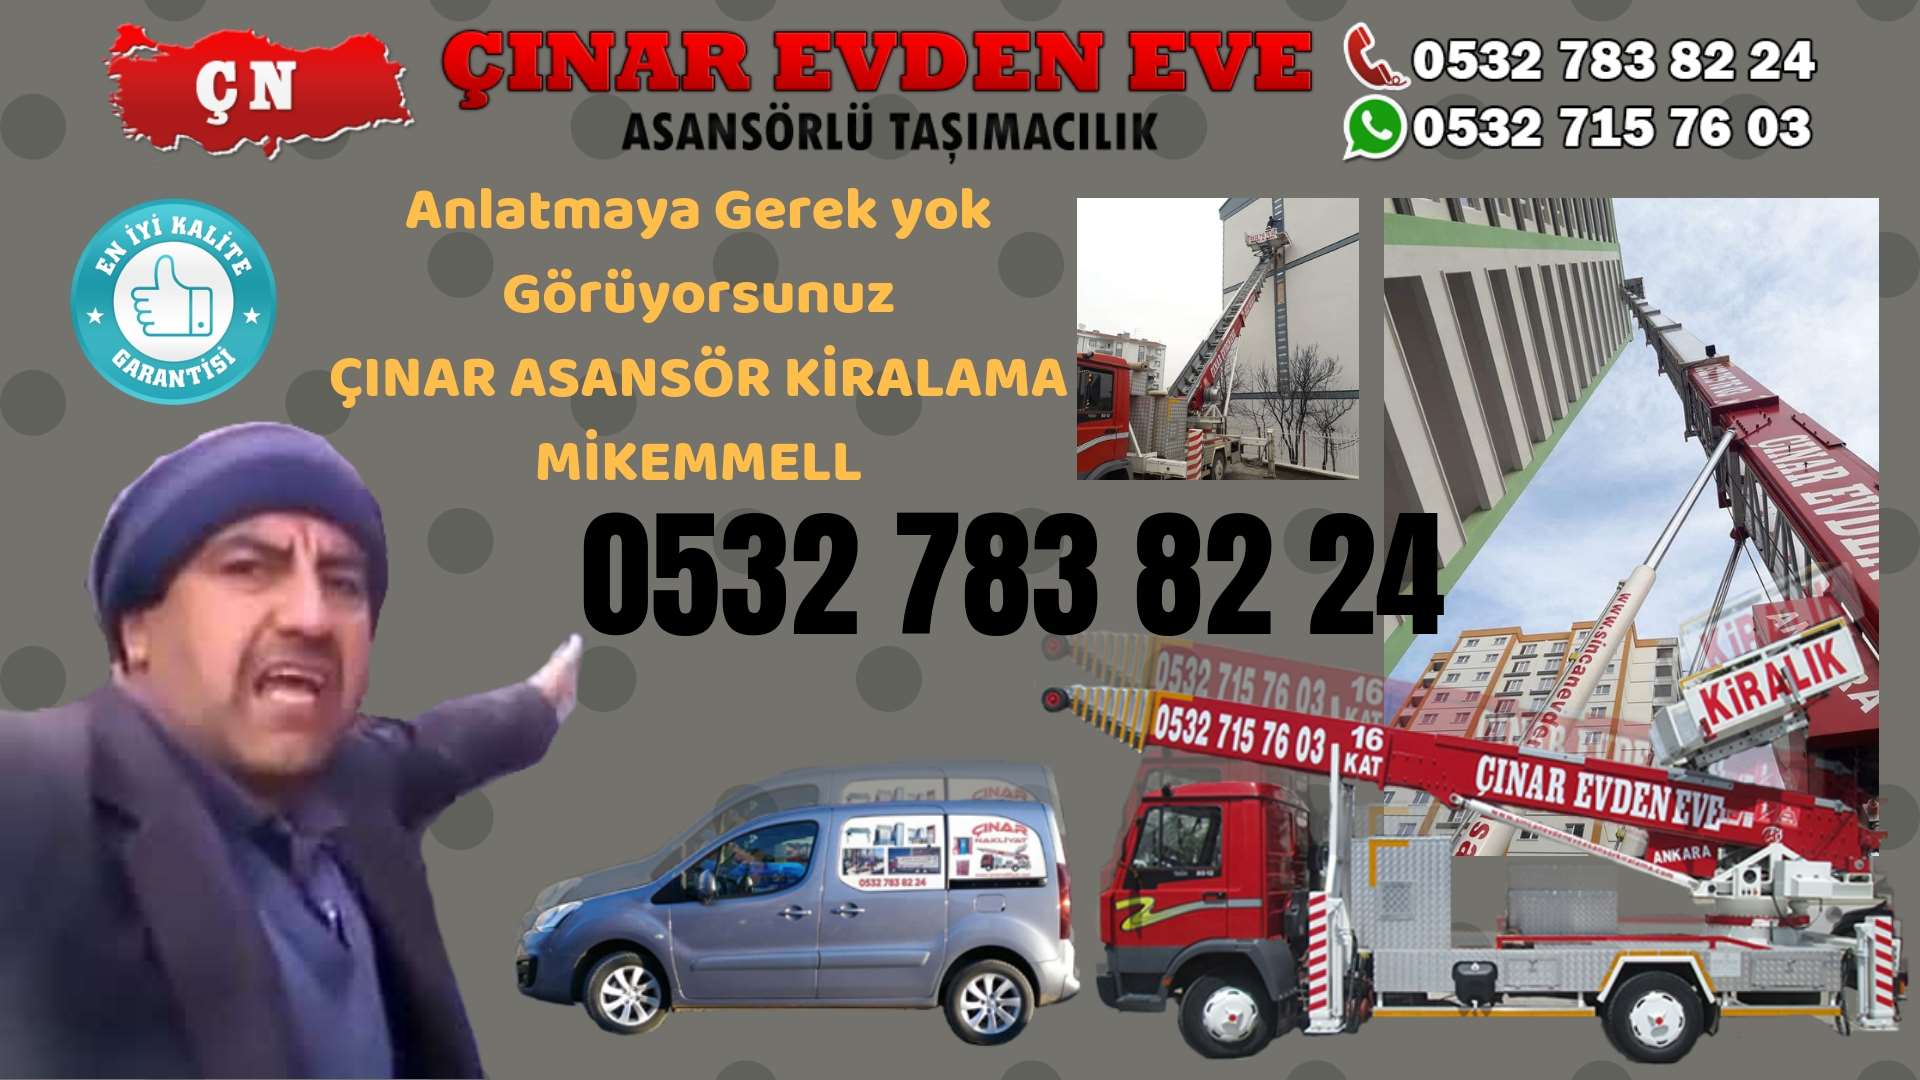 Ankara Yapracık TOKİ Ankara asansör kiralama hizmeti sizlere başta kalite ve maddi acıdan tasarruf 0532 715 76 03